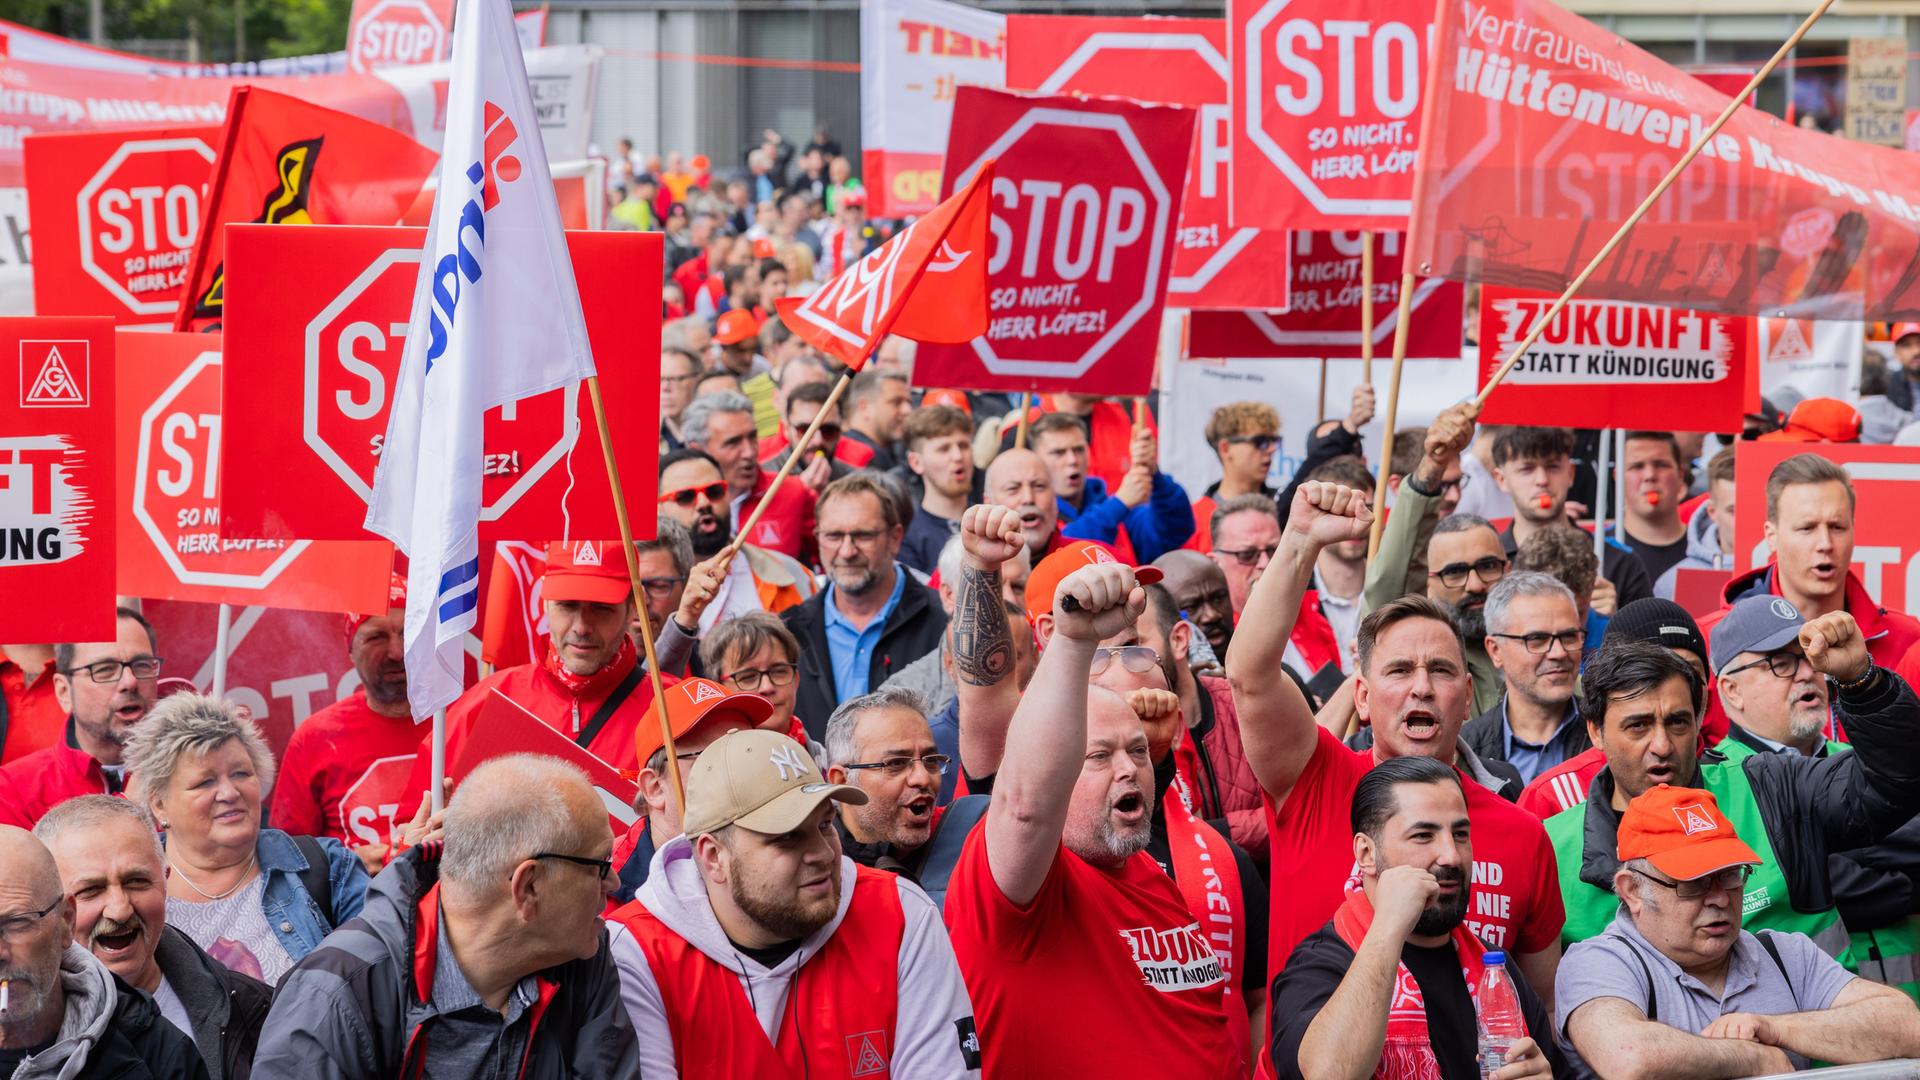 Mitarbeitende halten rote Plakate mit der Aufschrift "Stop" in die Luft.